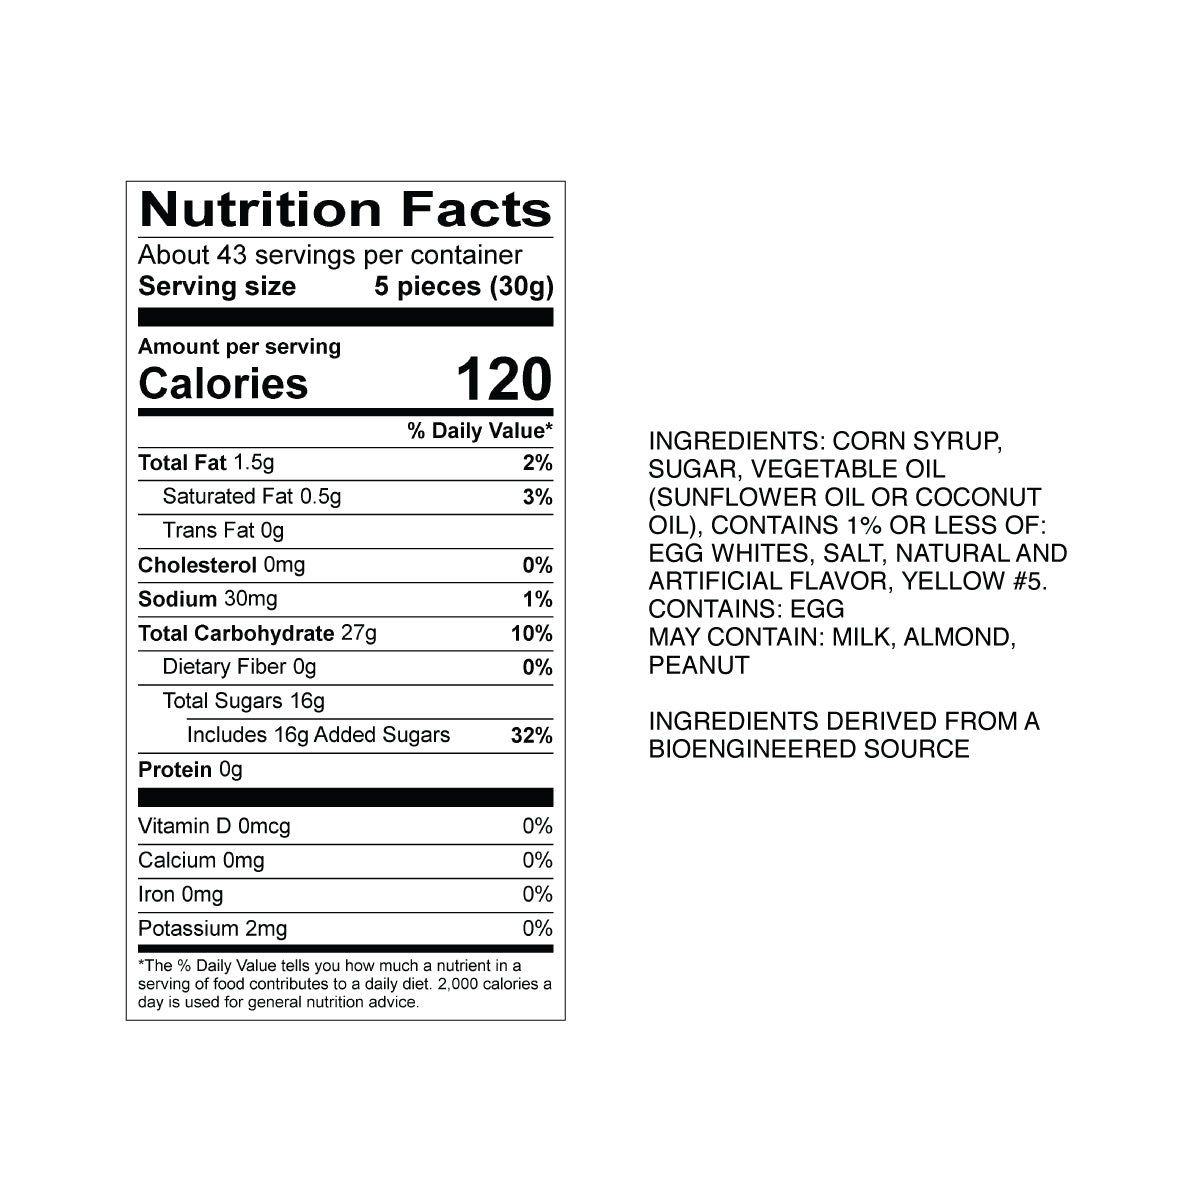 Sweet's Banana Taffy Nutrition Fact Panel & Ingredients for the NET WT 2.82LB (1.28kg) Bulk Bag